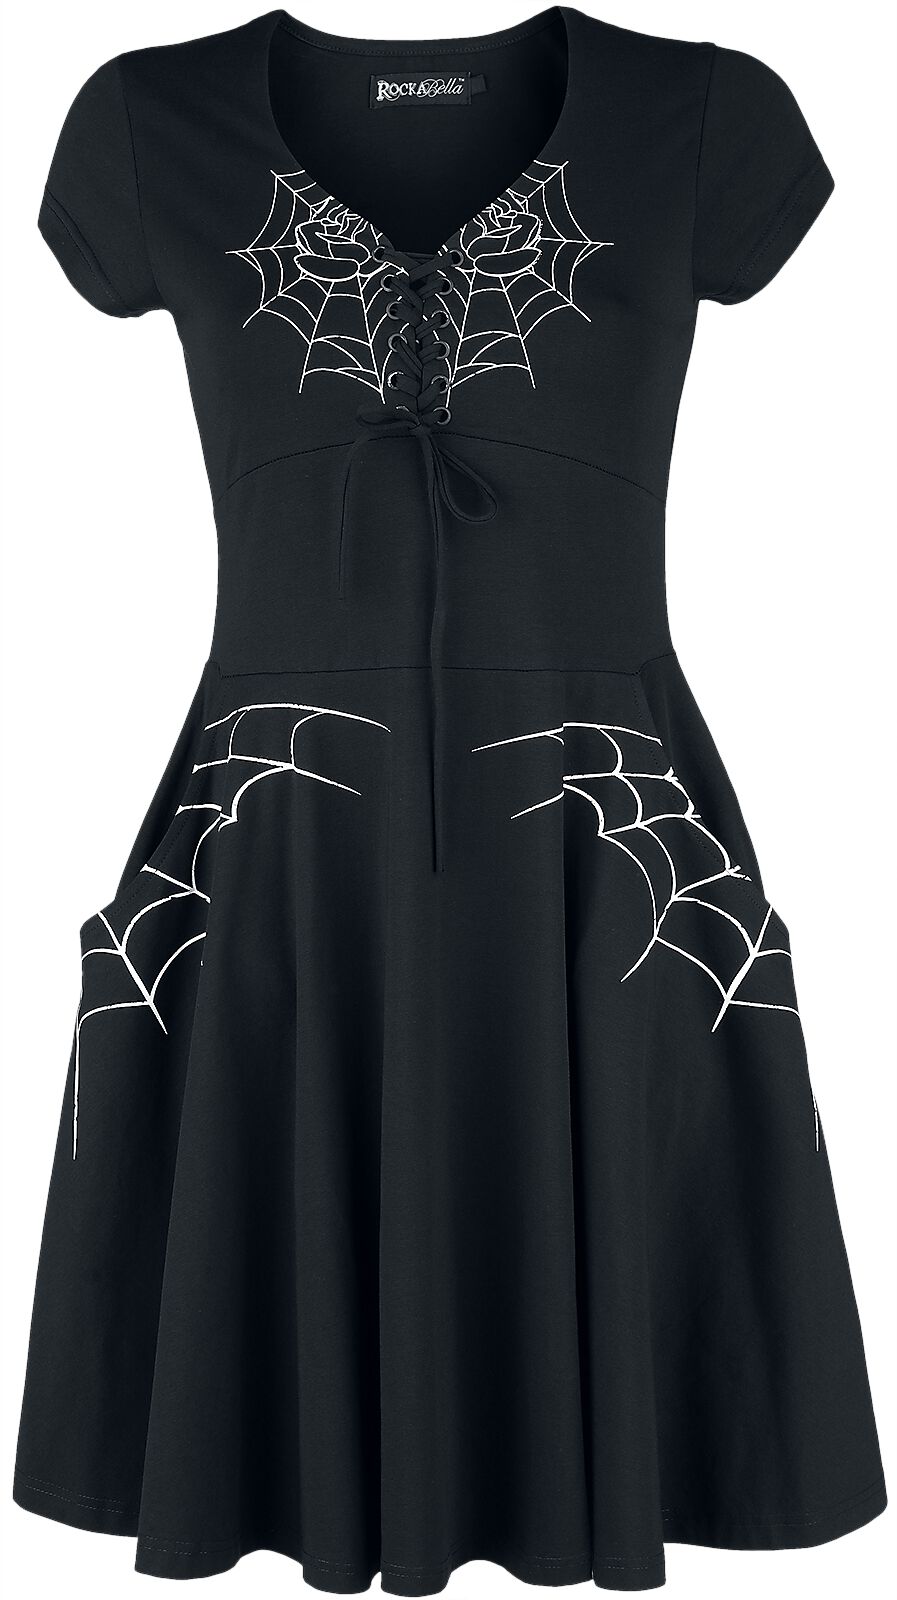 Rockabella - Gothic Kurzes Kleid - Black Widow Dress - S bis 4XL - für Damen - Größe M - schwarz/weiß von Rockabella